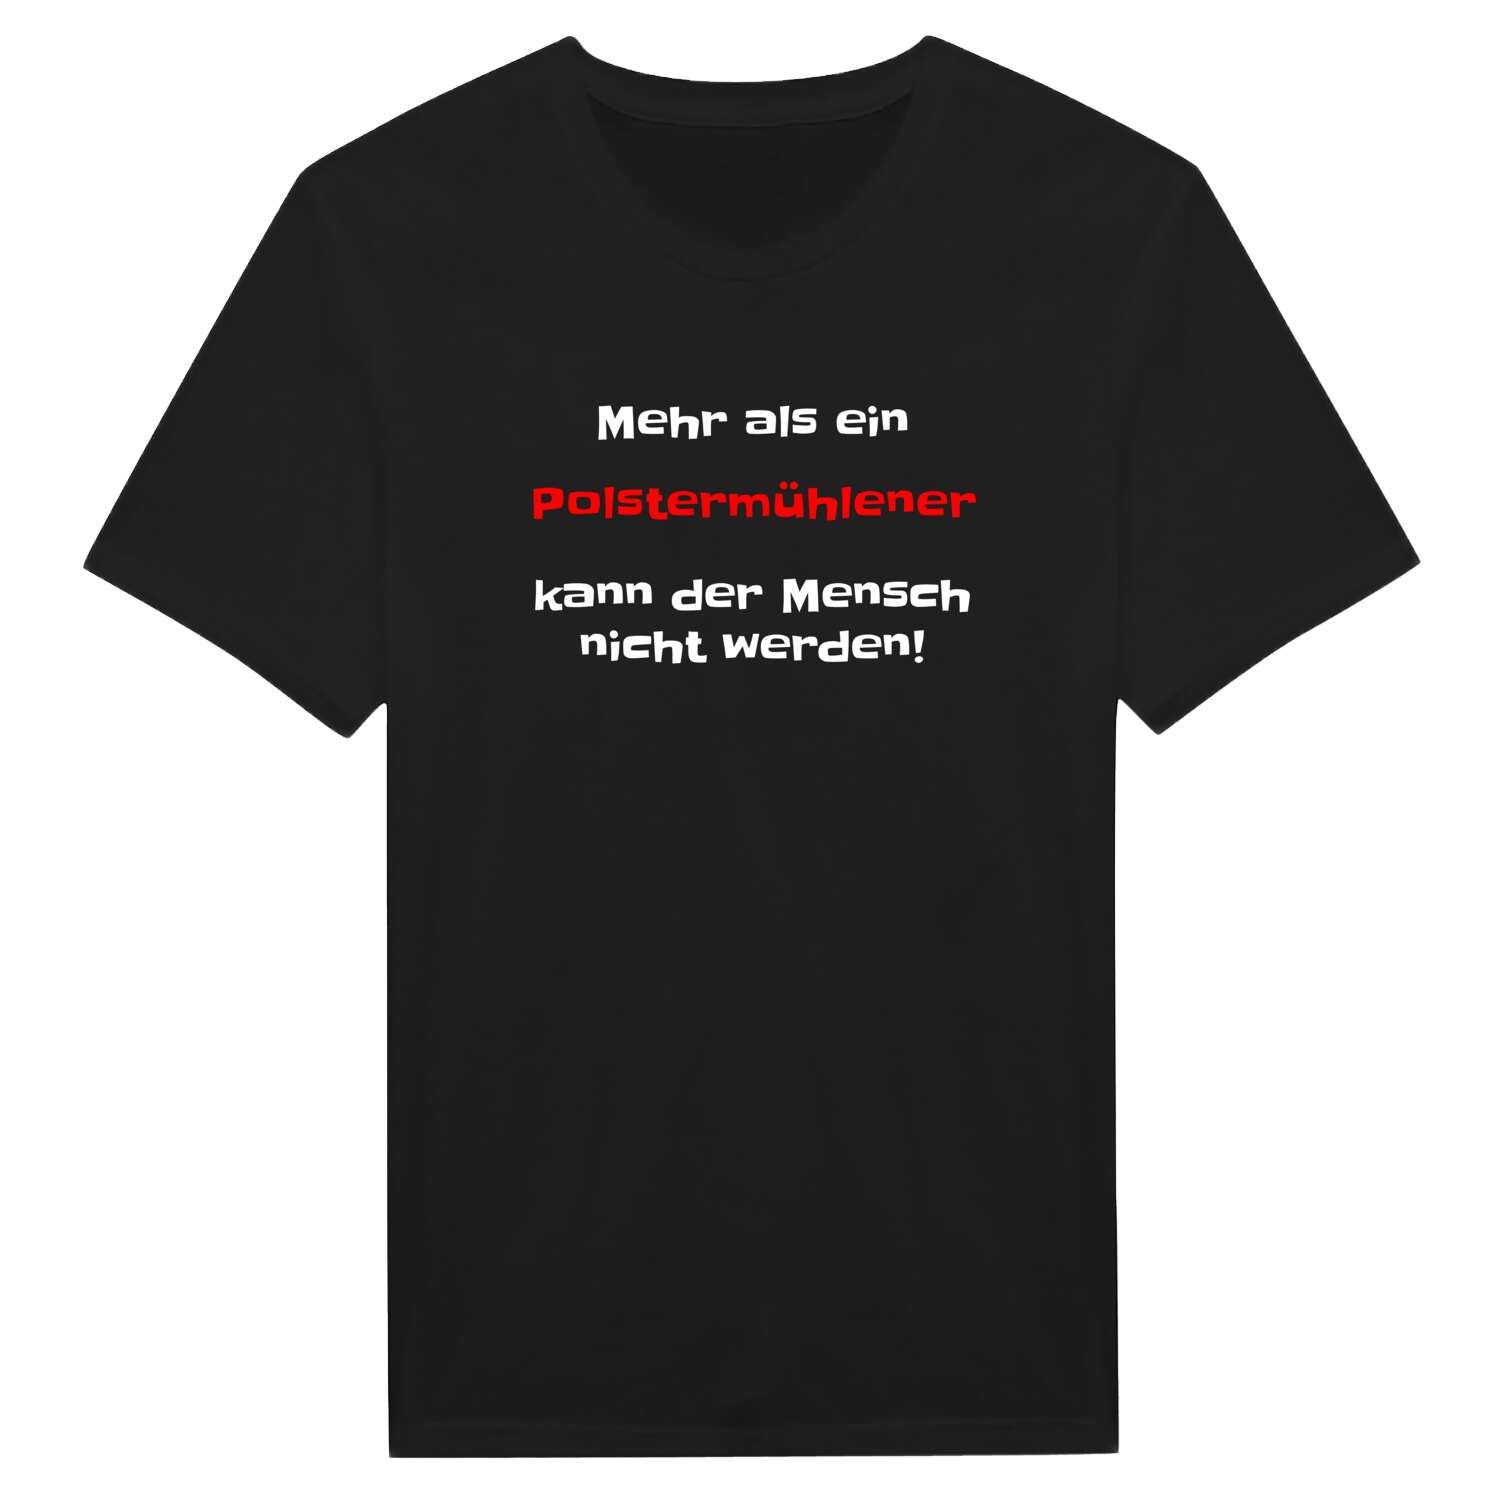 Polstermühle T-Shirt »Mehr als ein«